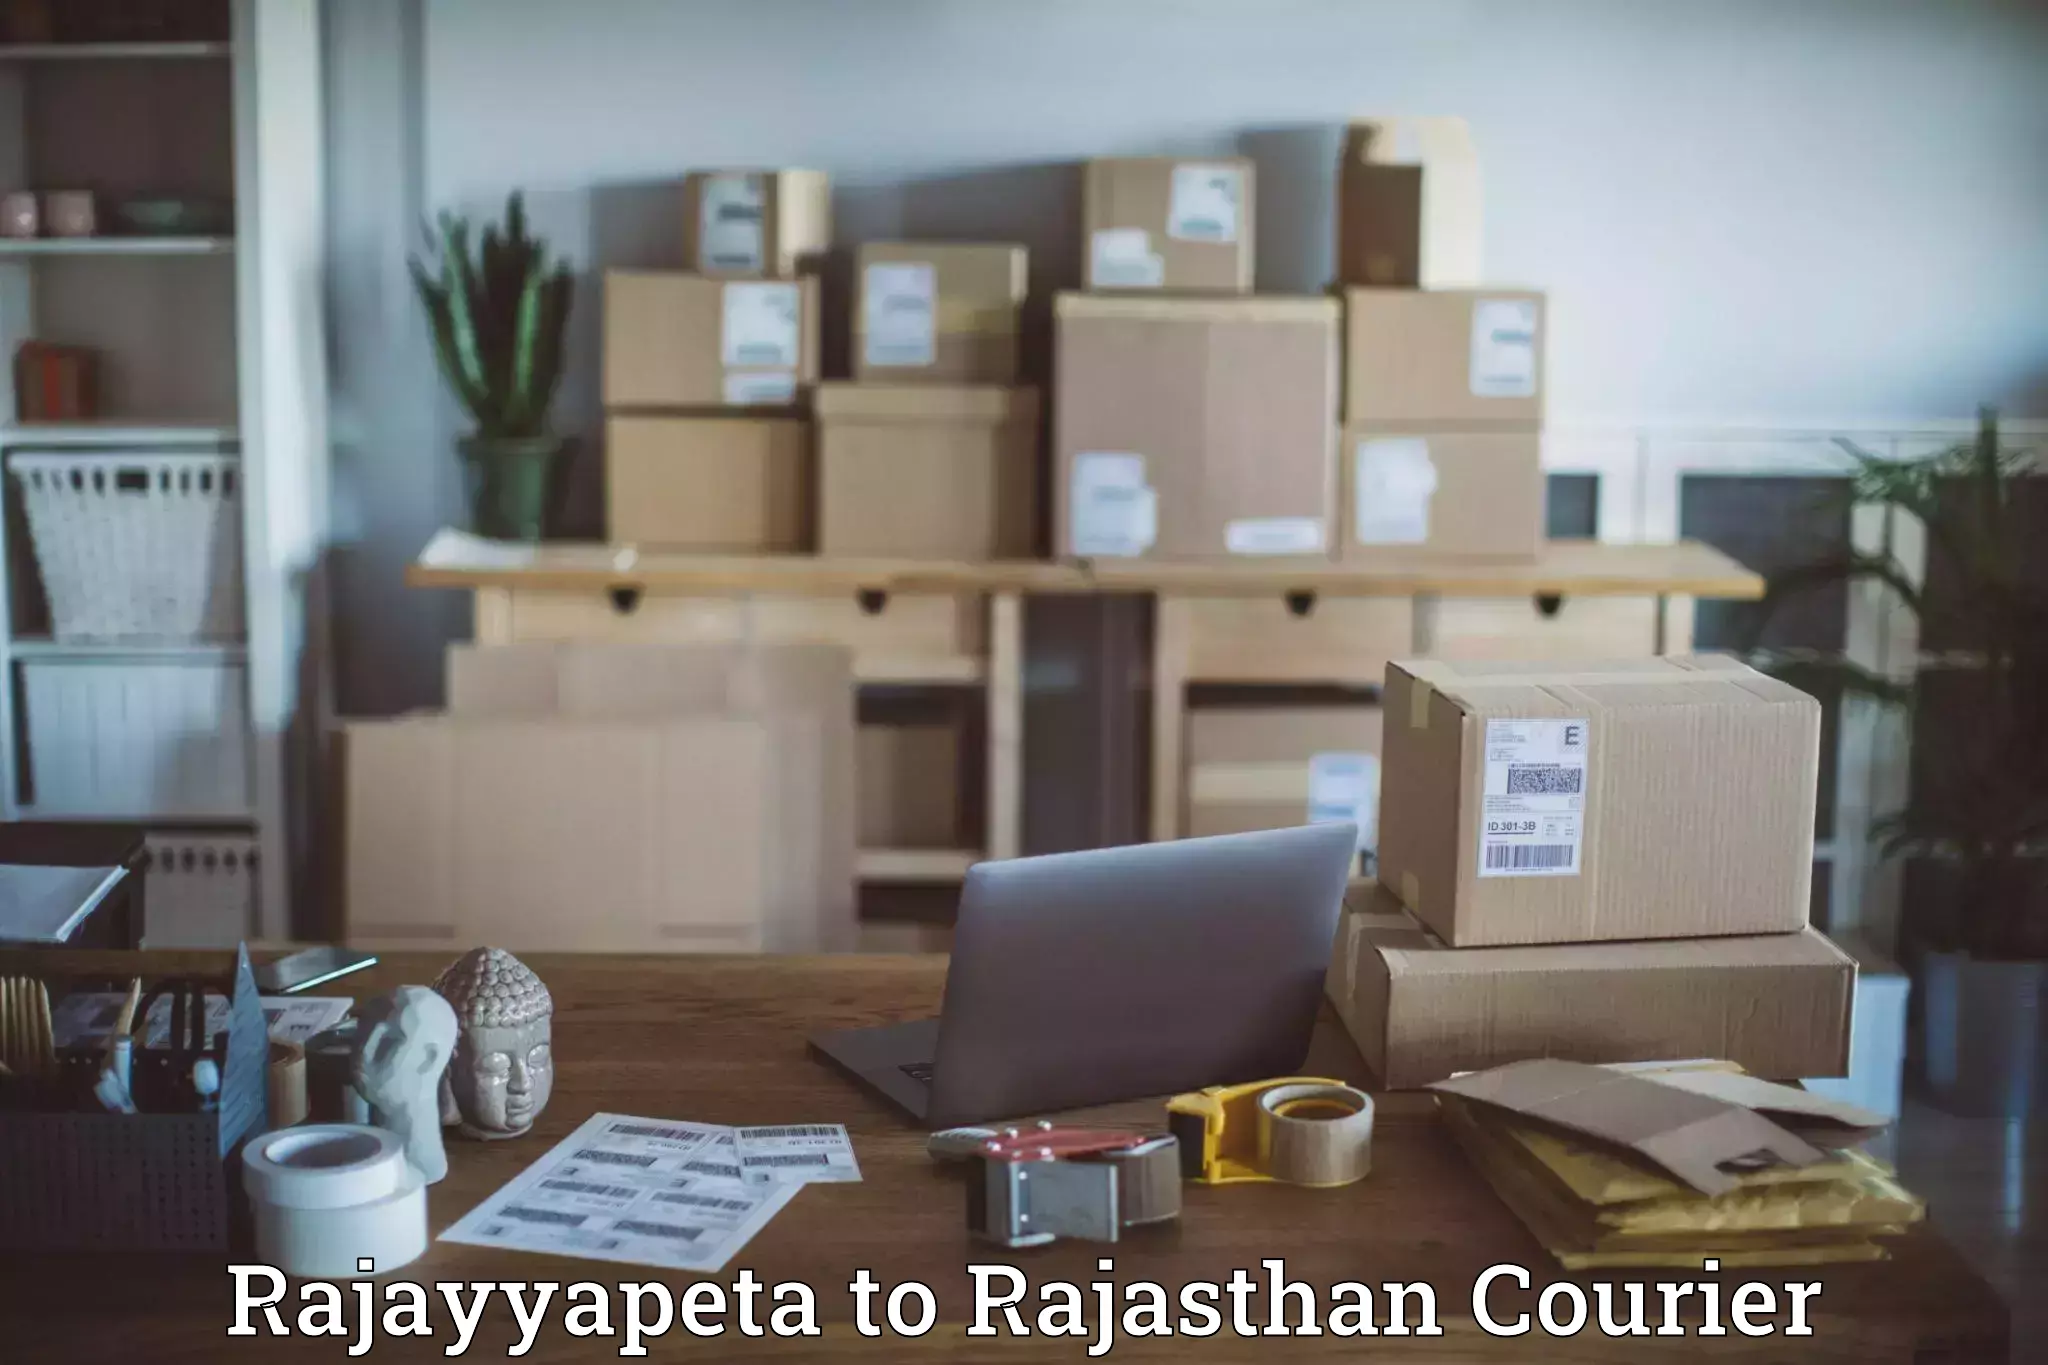 Return courier service Rajayyapeta to NIT Jaipur